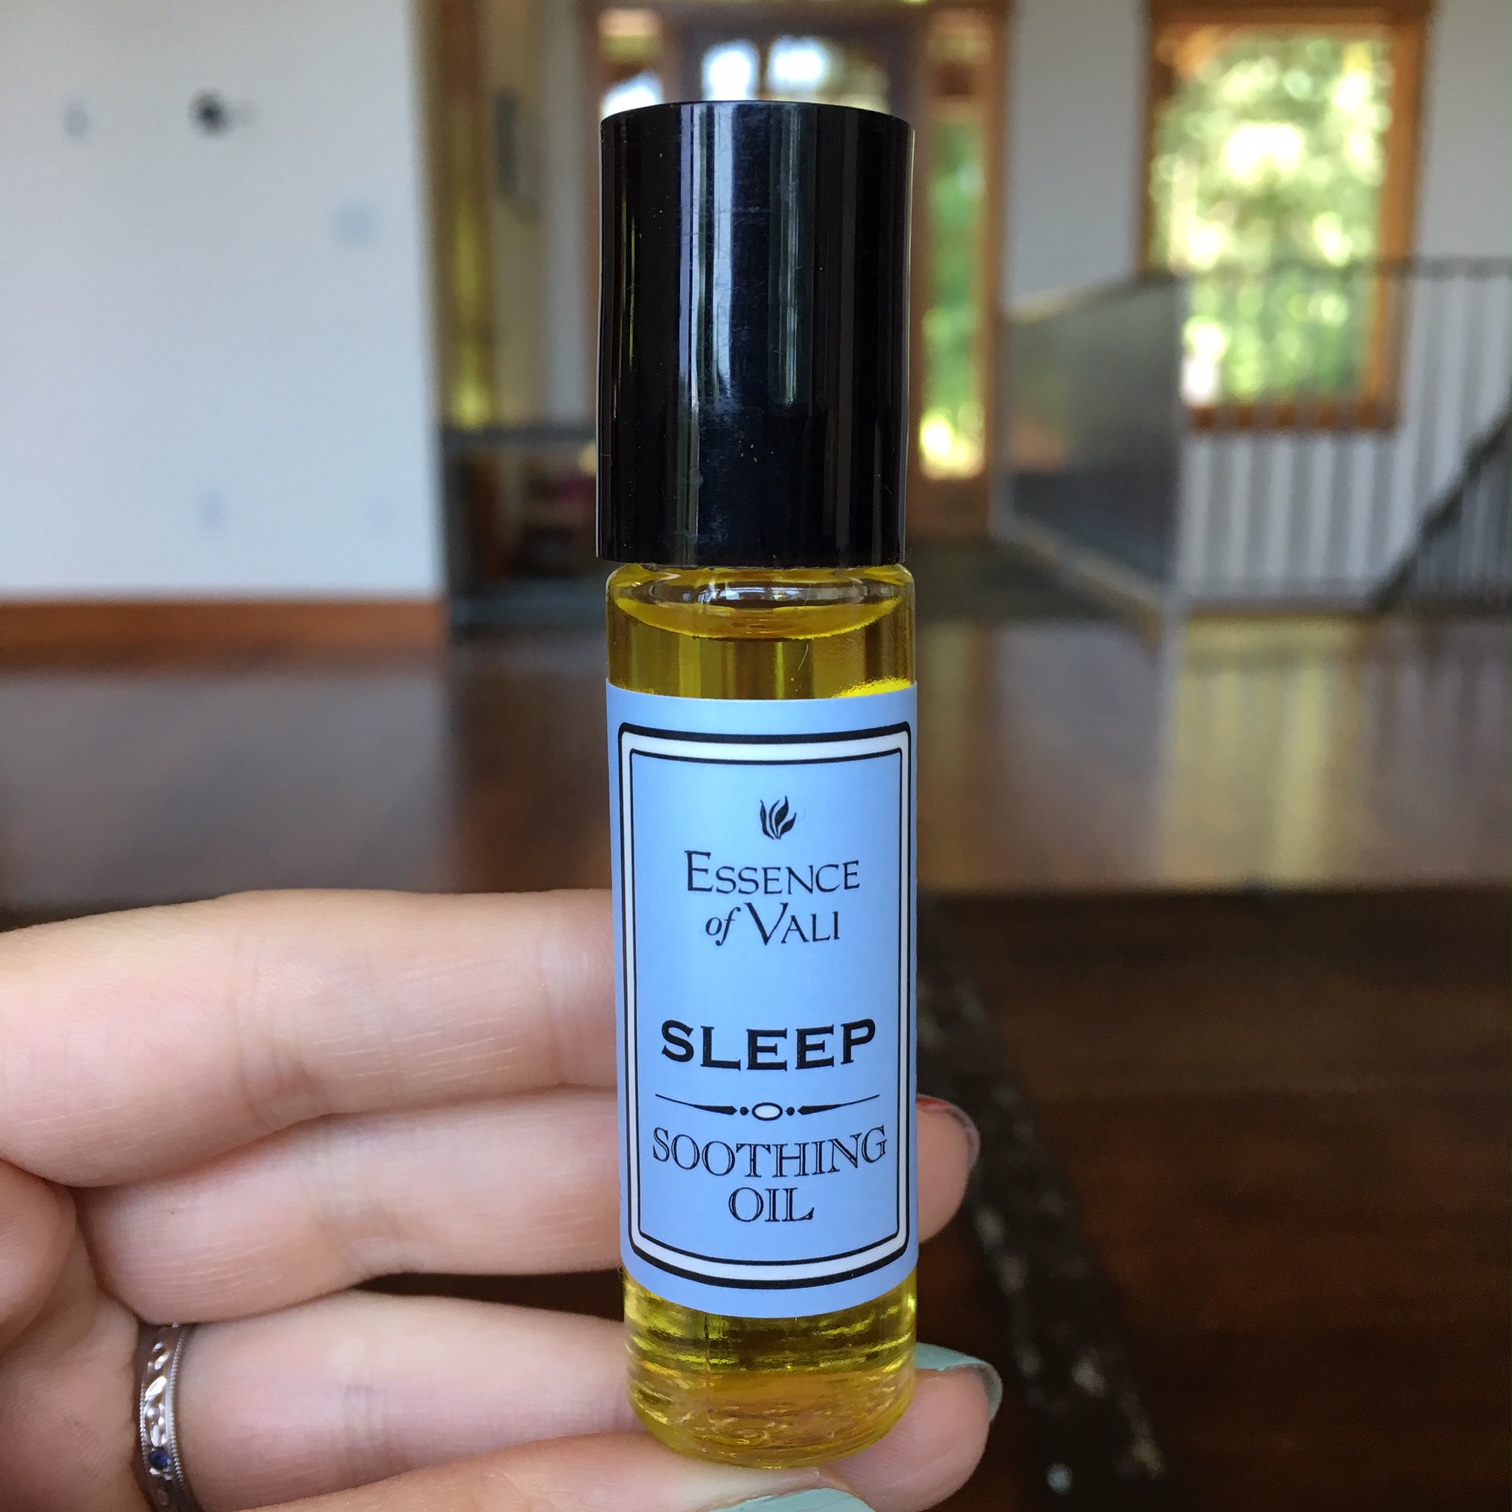 Essence of Vali Sleep essential oil blend